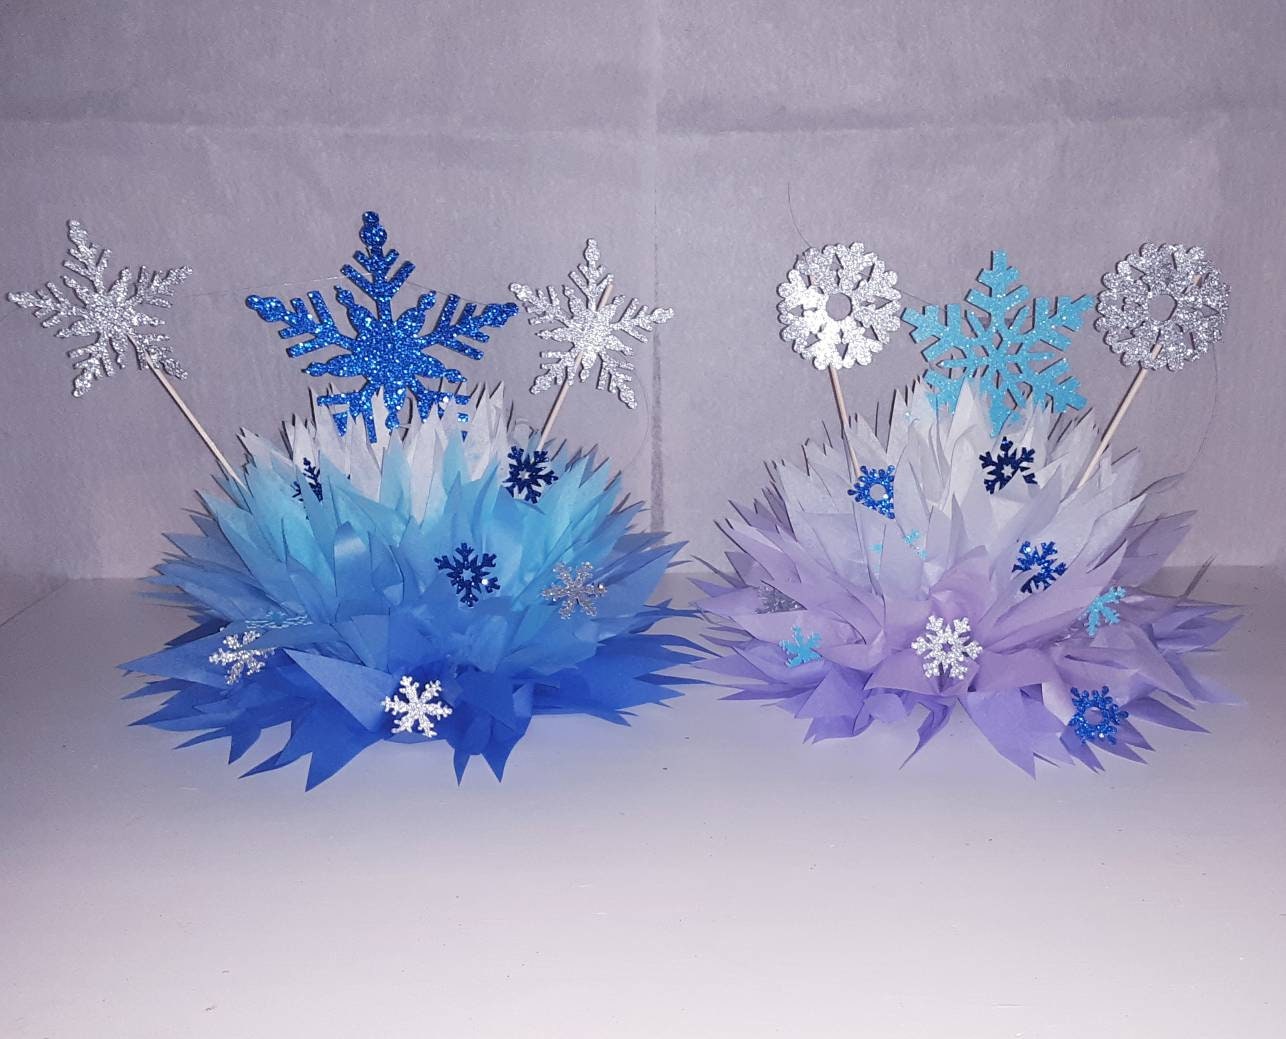 1000Pcs Snowflake Snow-White Party-Decorations Frozen Paper